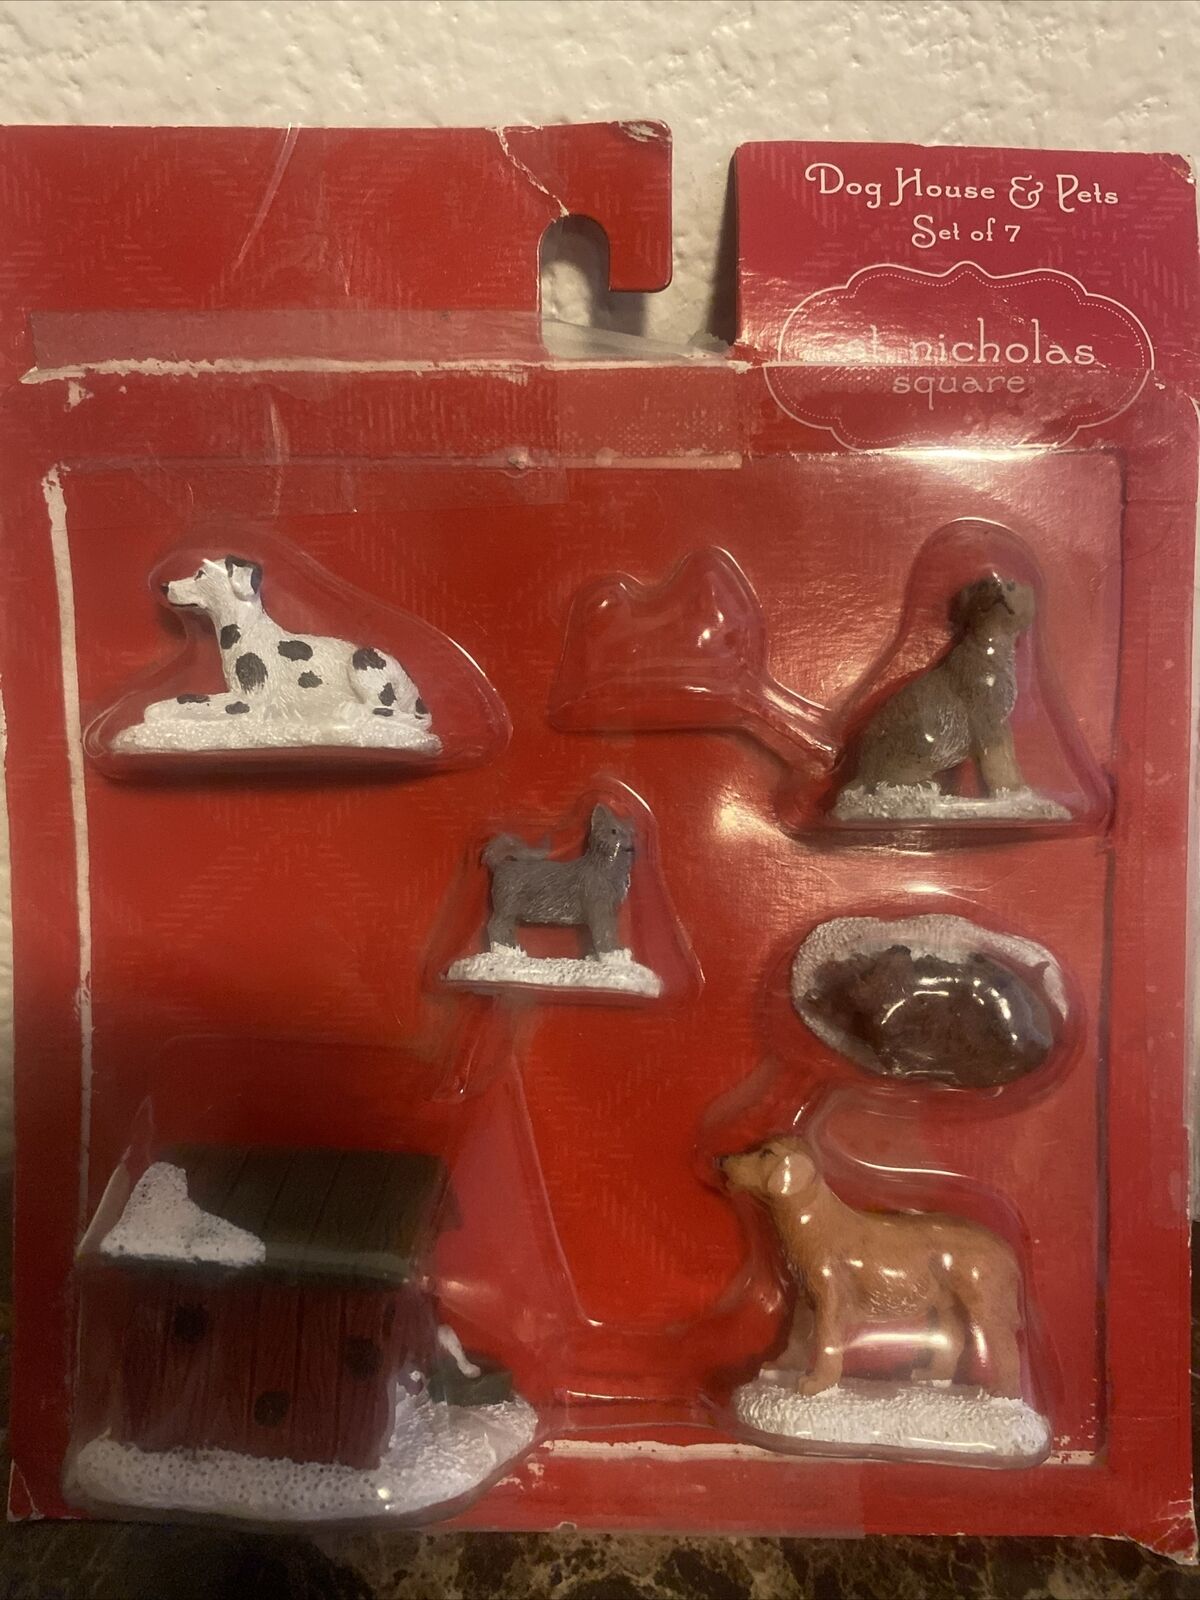 St Nicholas Square Dog House And Pets Figurine Set